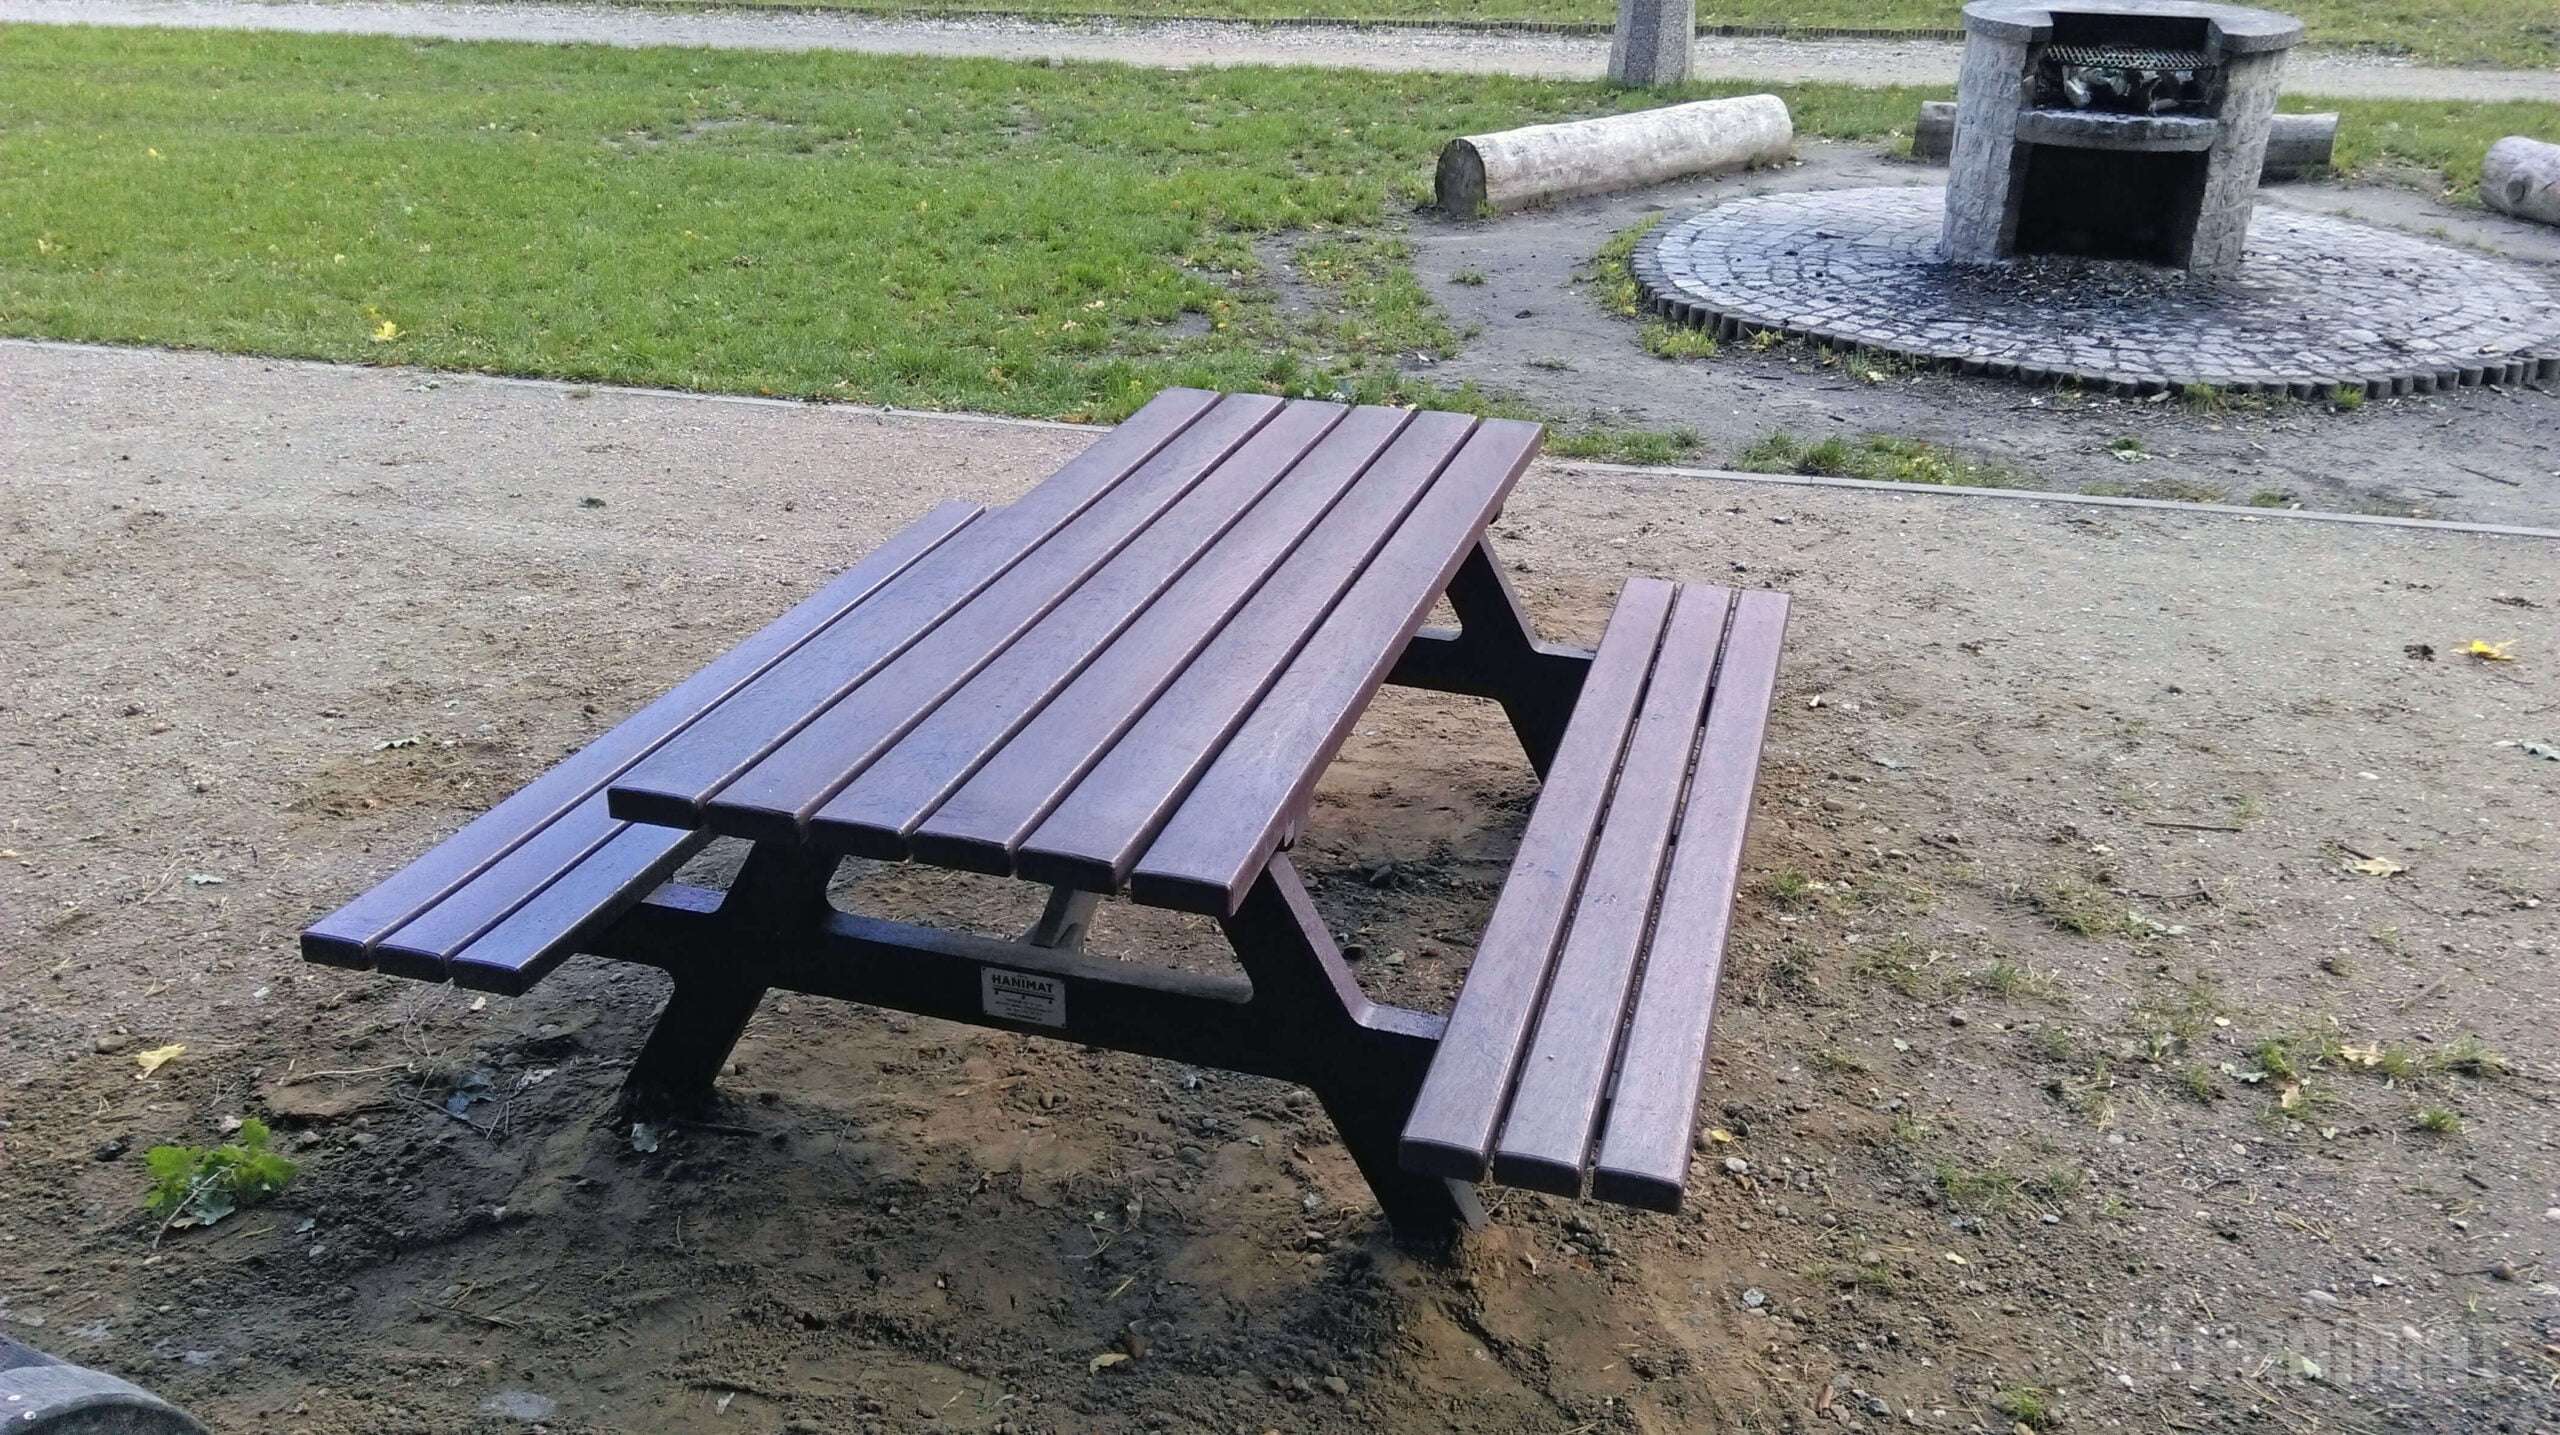 Ławki piknikowe w parku Podleśna Polana w Gdańsku Wrzeszczu